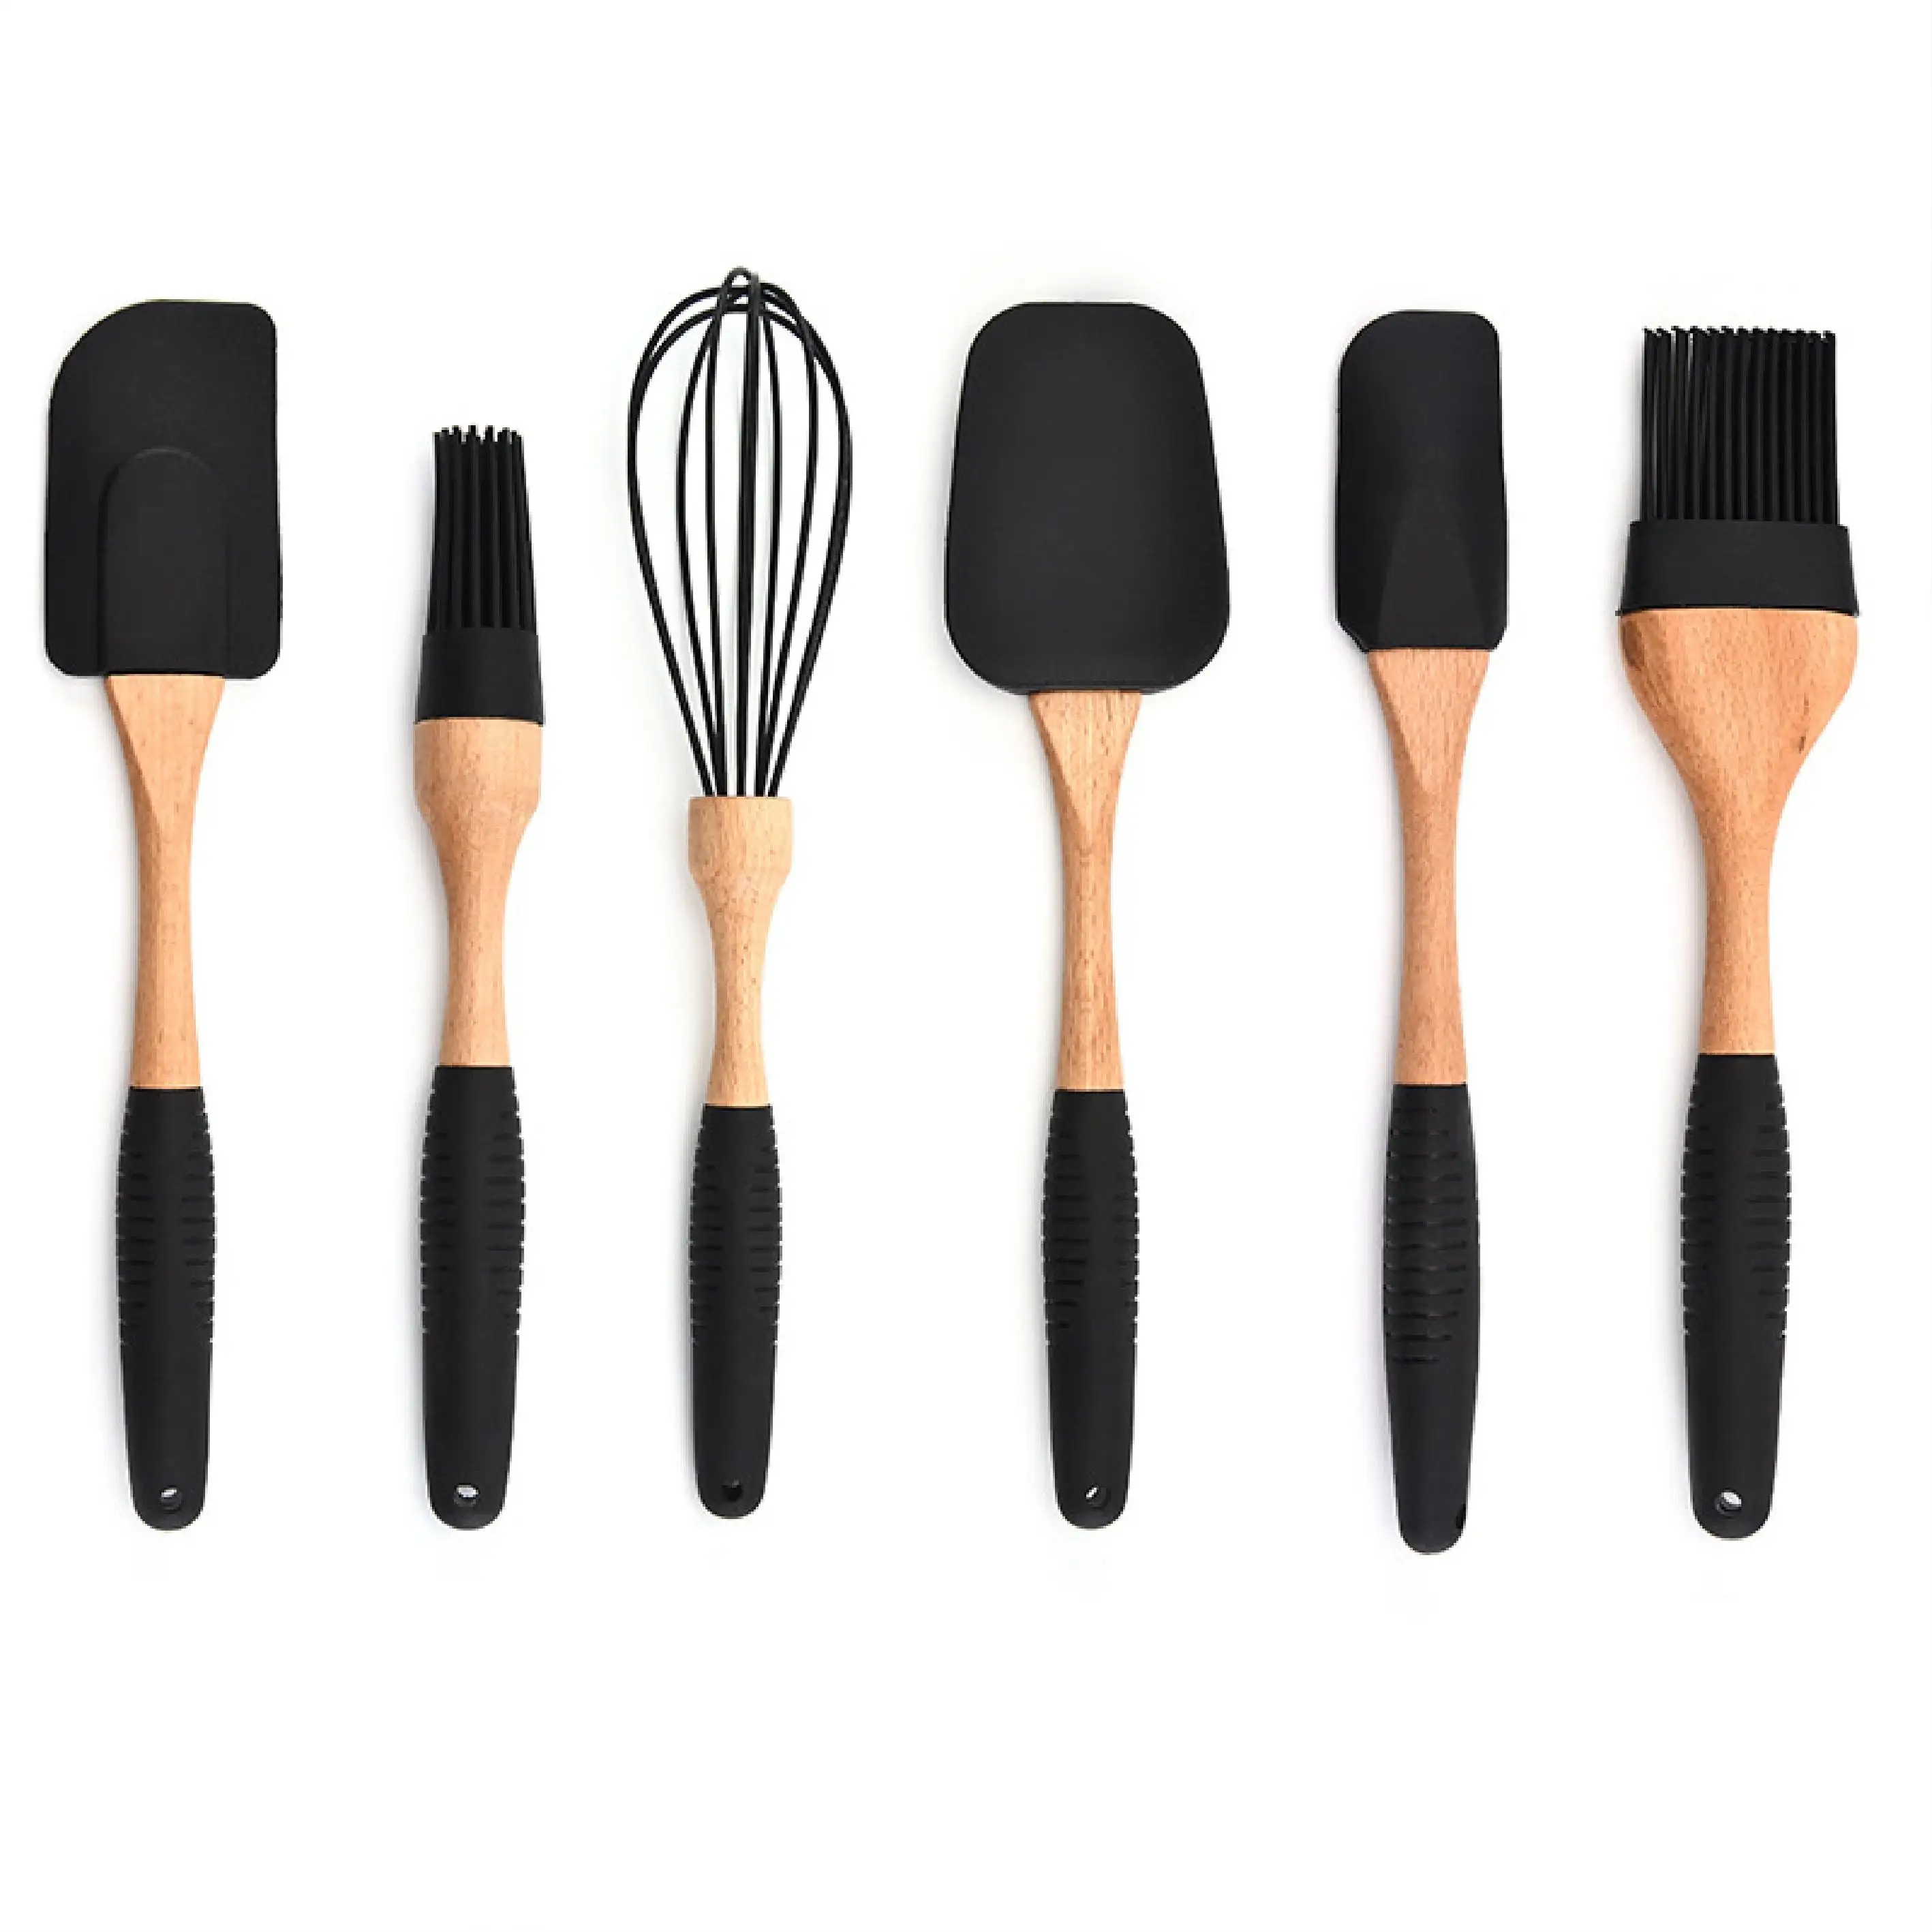 Juego de utensilios de cocina de silicona, con mango de madera, accesorios, espátula, cuchara giratoria, utensilios de cocina